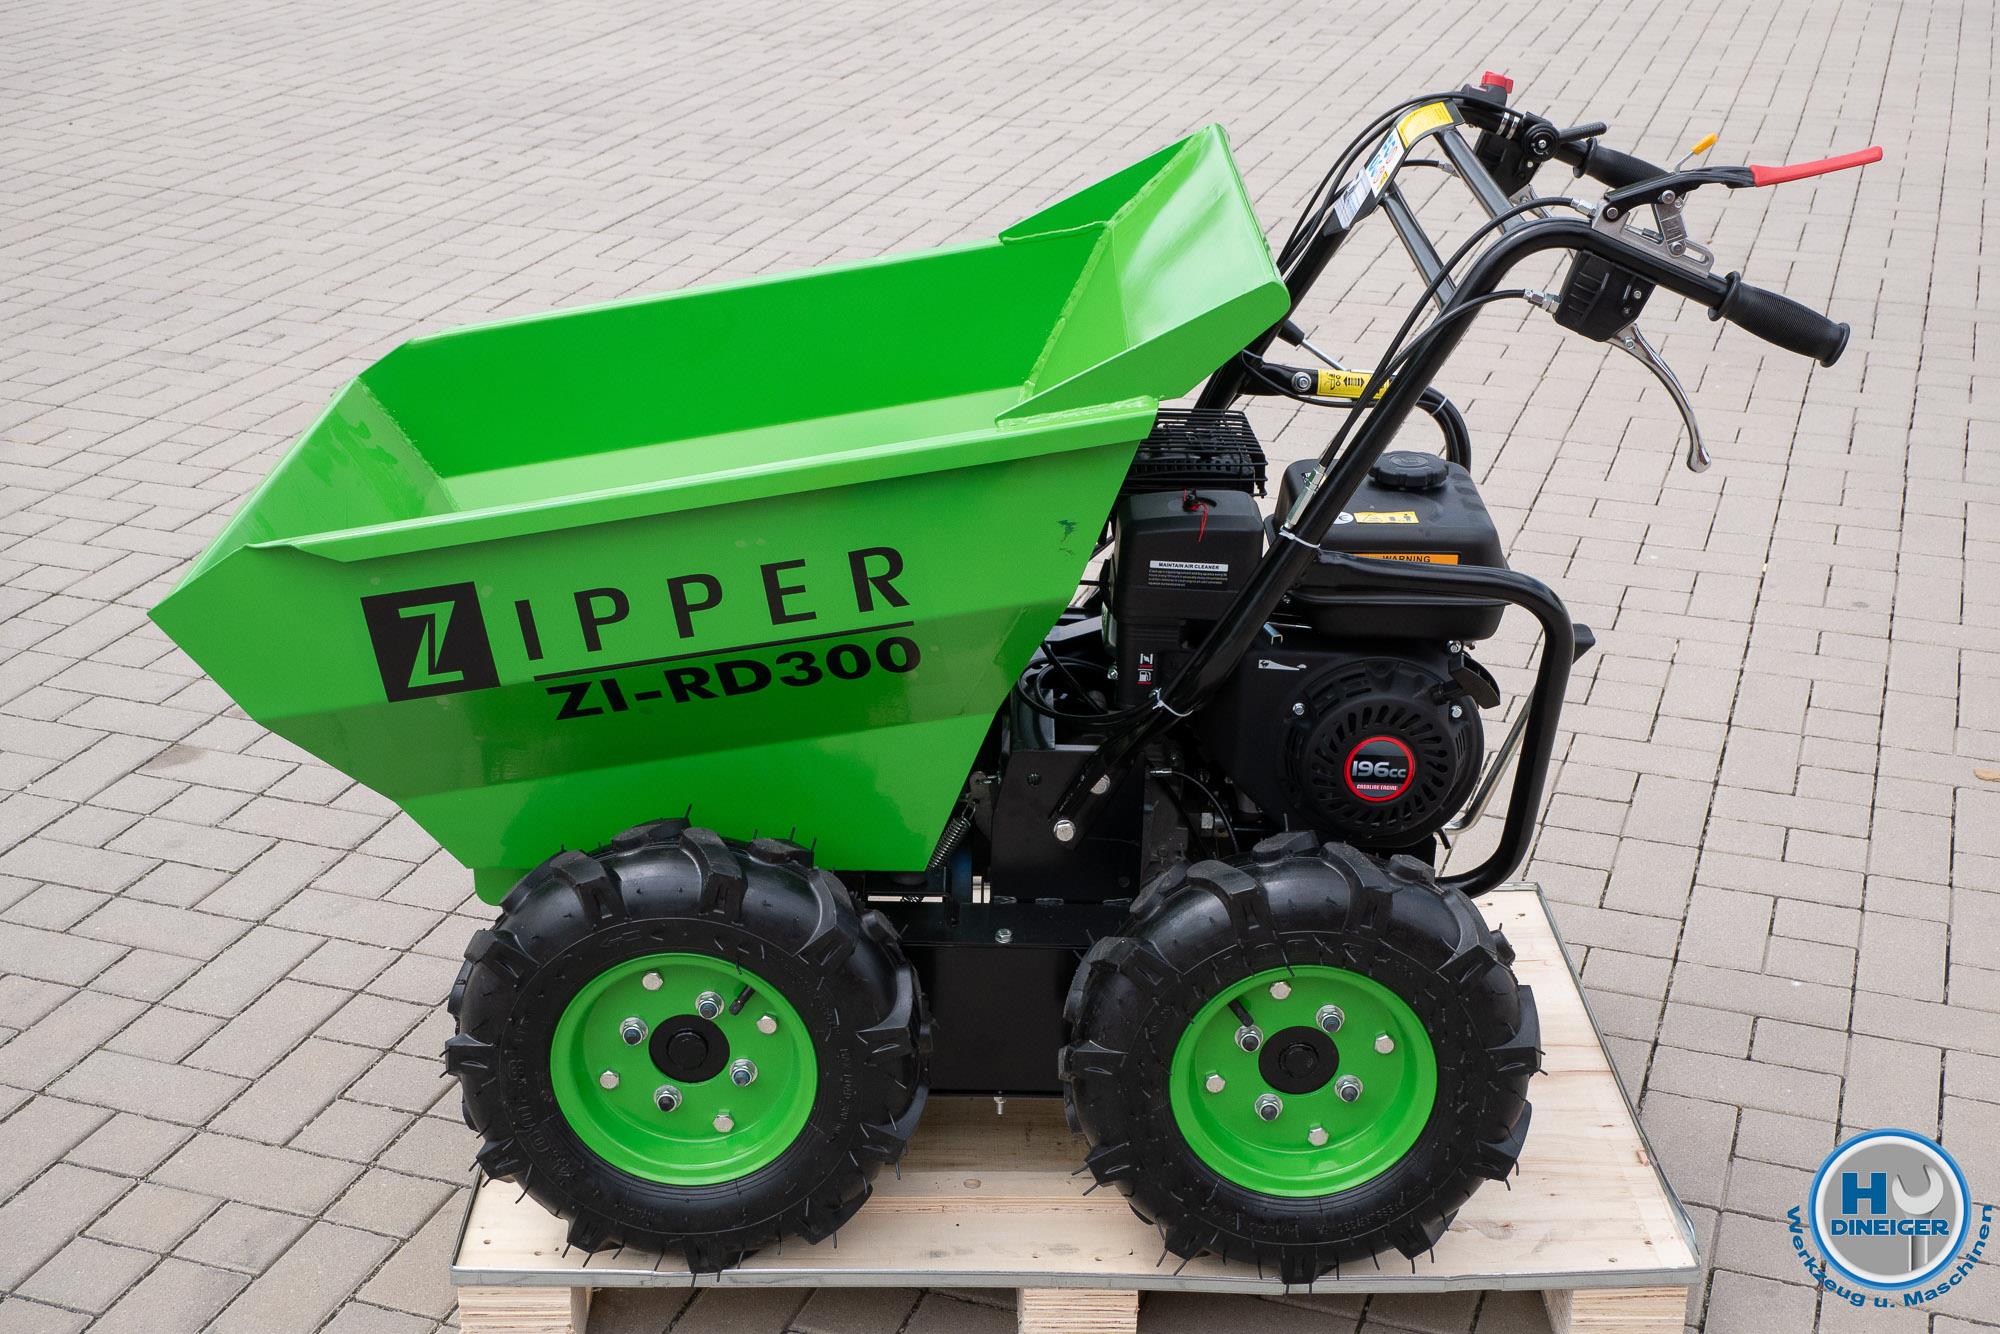 Zipper Maschinen Shop - Zipper Maschinen ZI RD 300 Miniraddumper